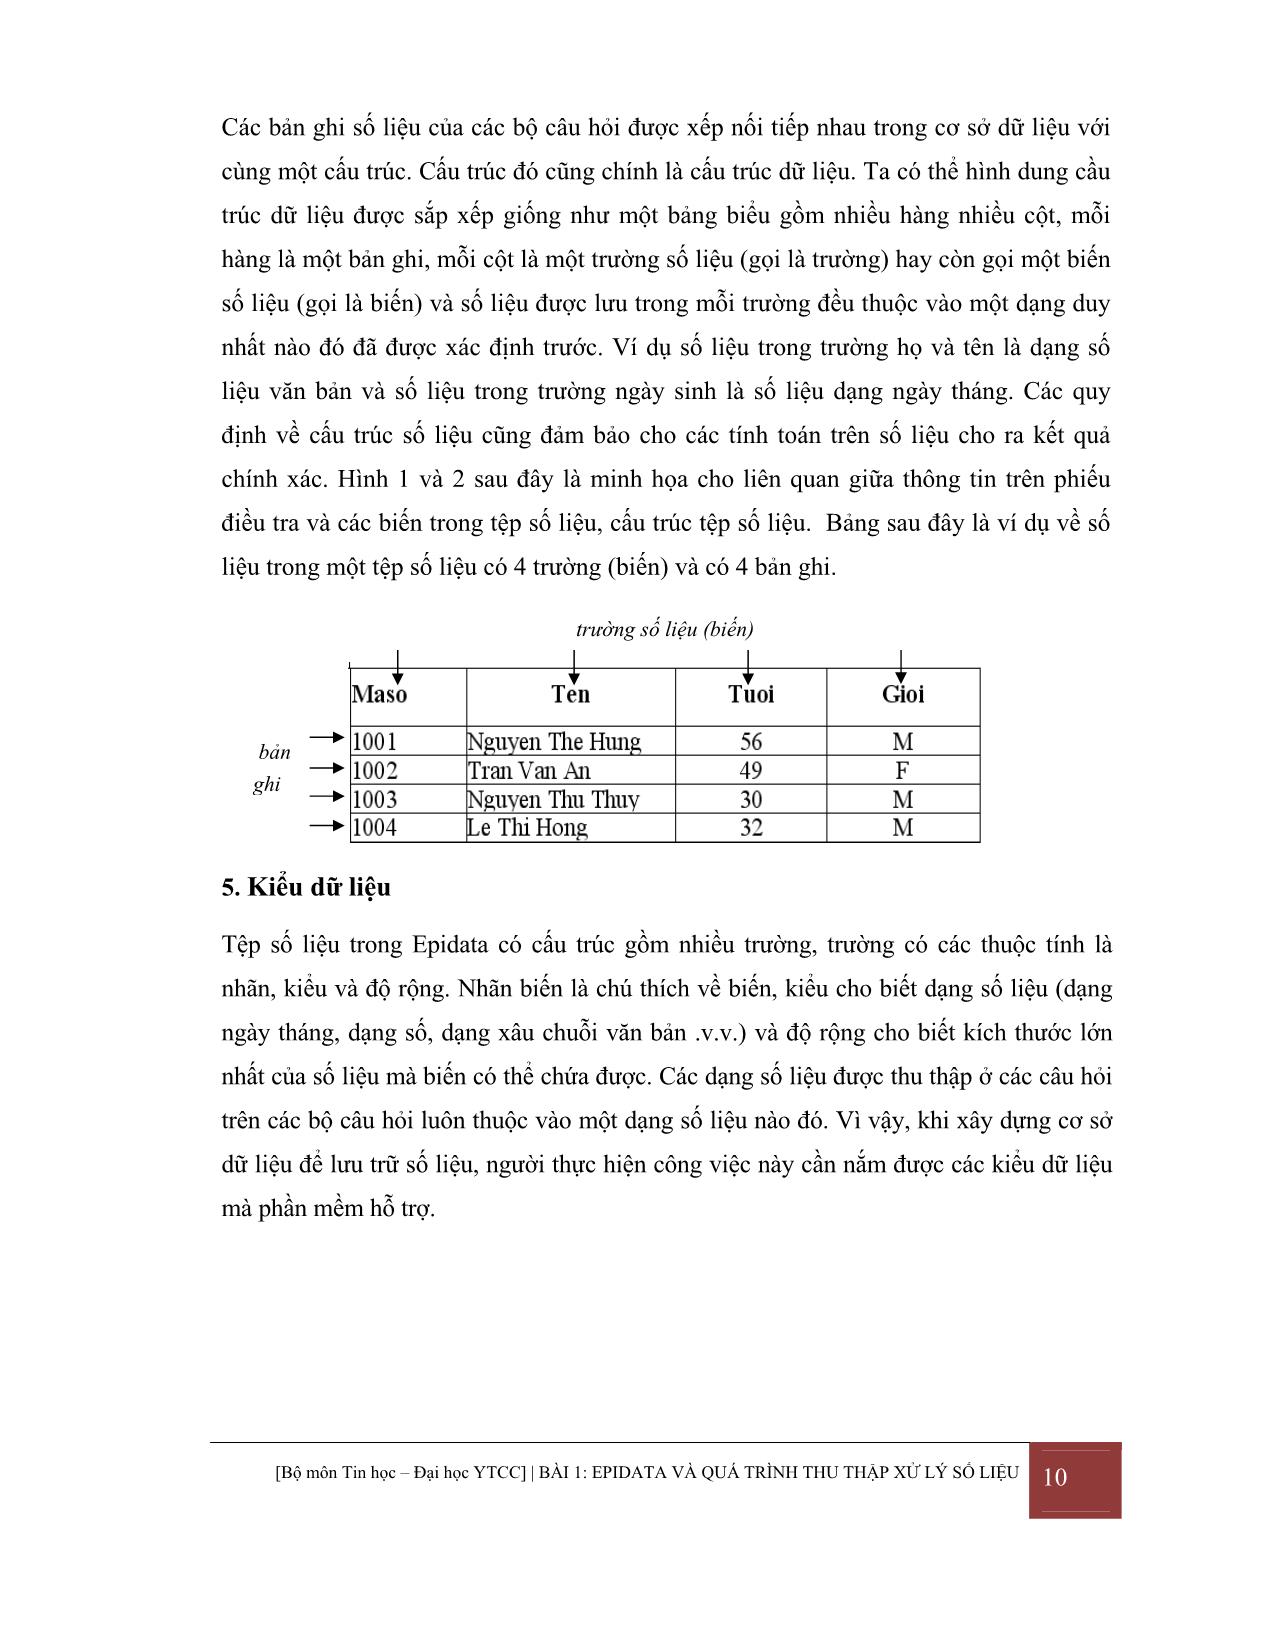 Giáo trình Kỹ thuật máy tính phần mềm Epidata trang 10